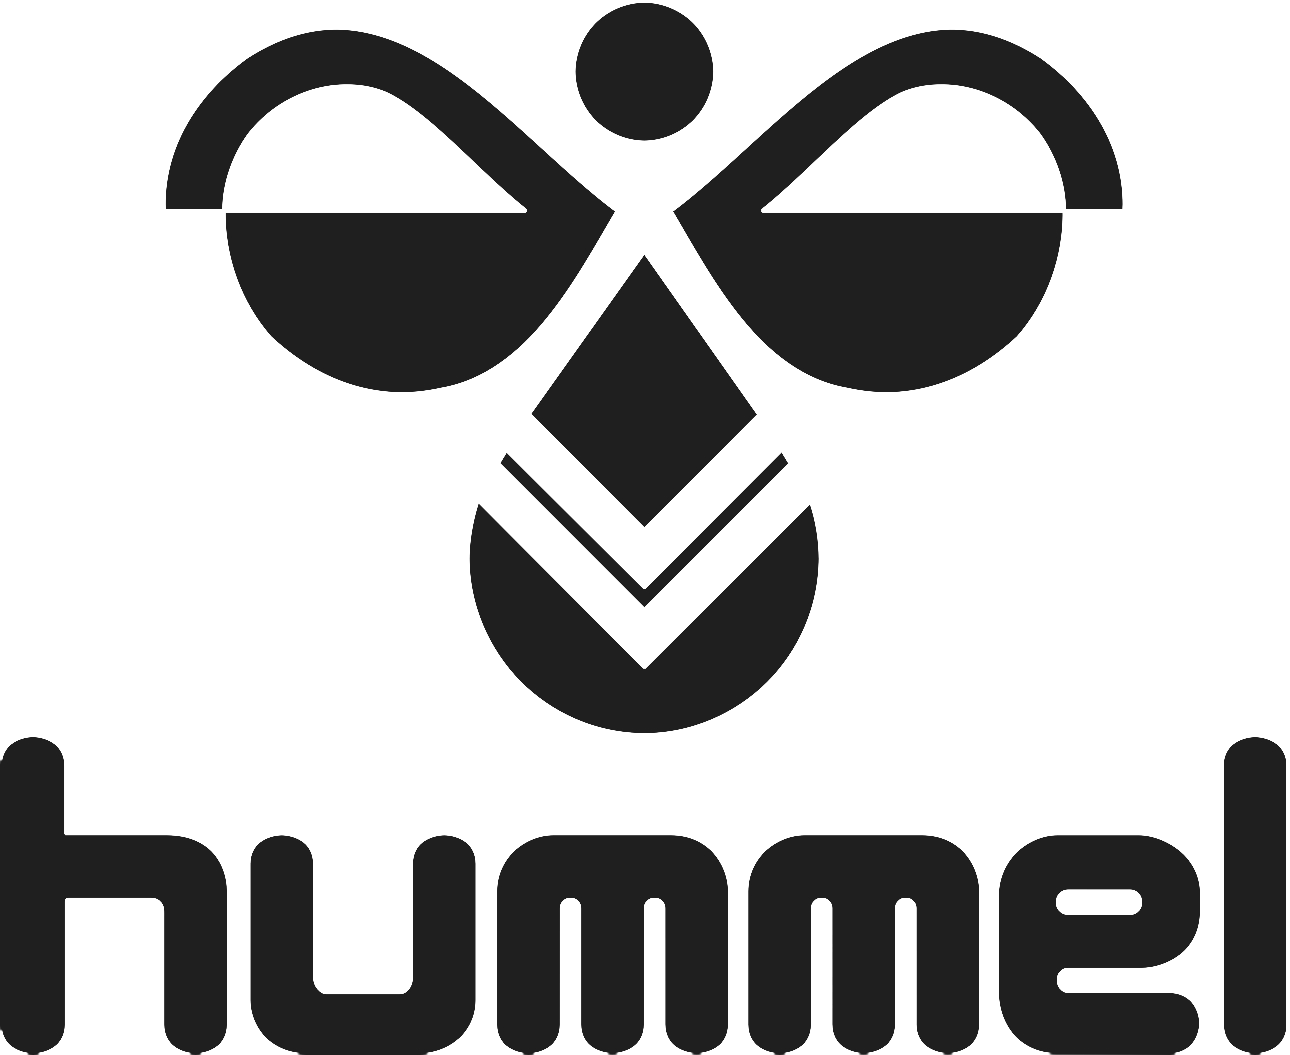 tildele Koncentration skammel Hummel Logo - Hummel Logo - (1290x1055) Png Clipart Download